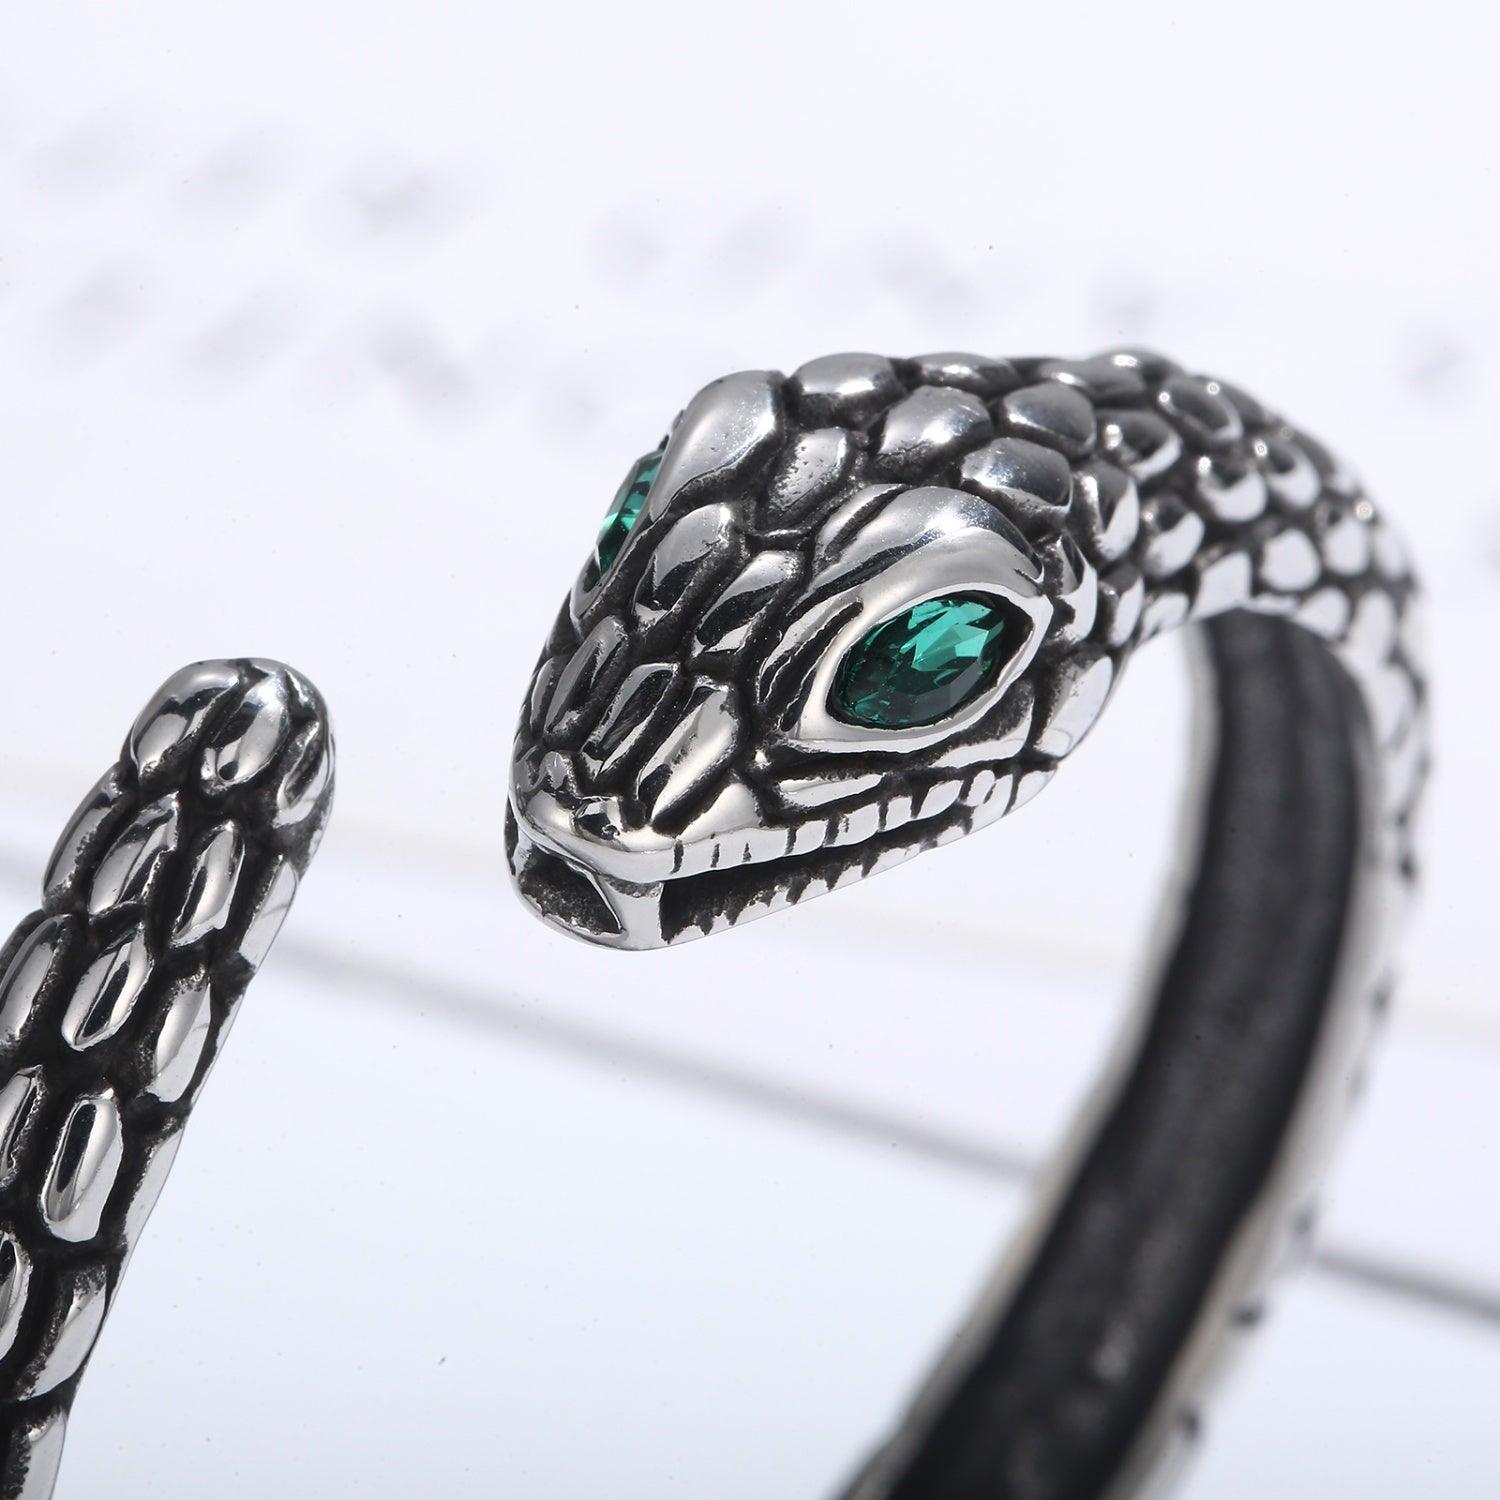 a close up of a bracelet with a snake on it